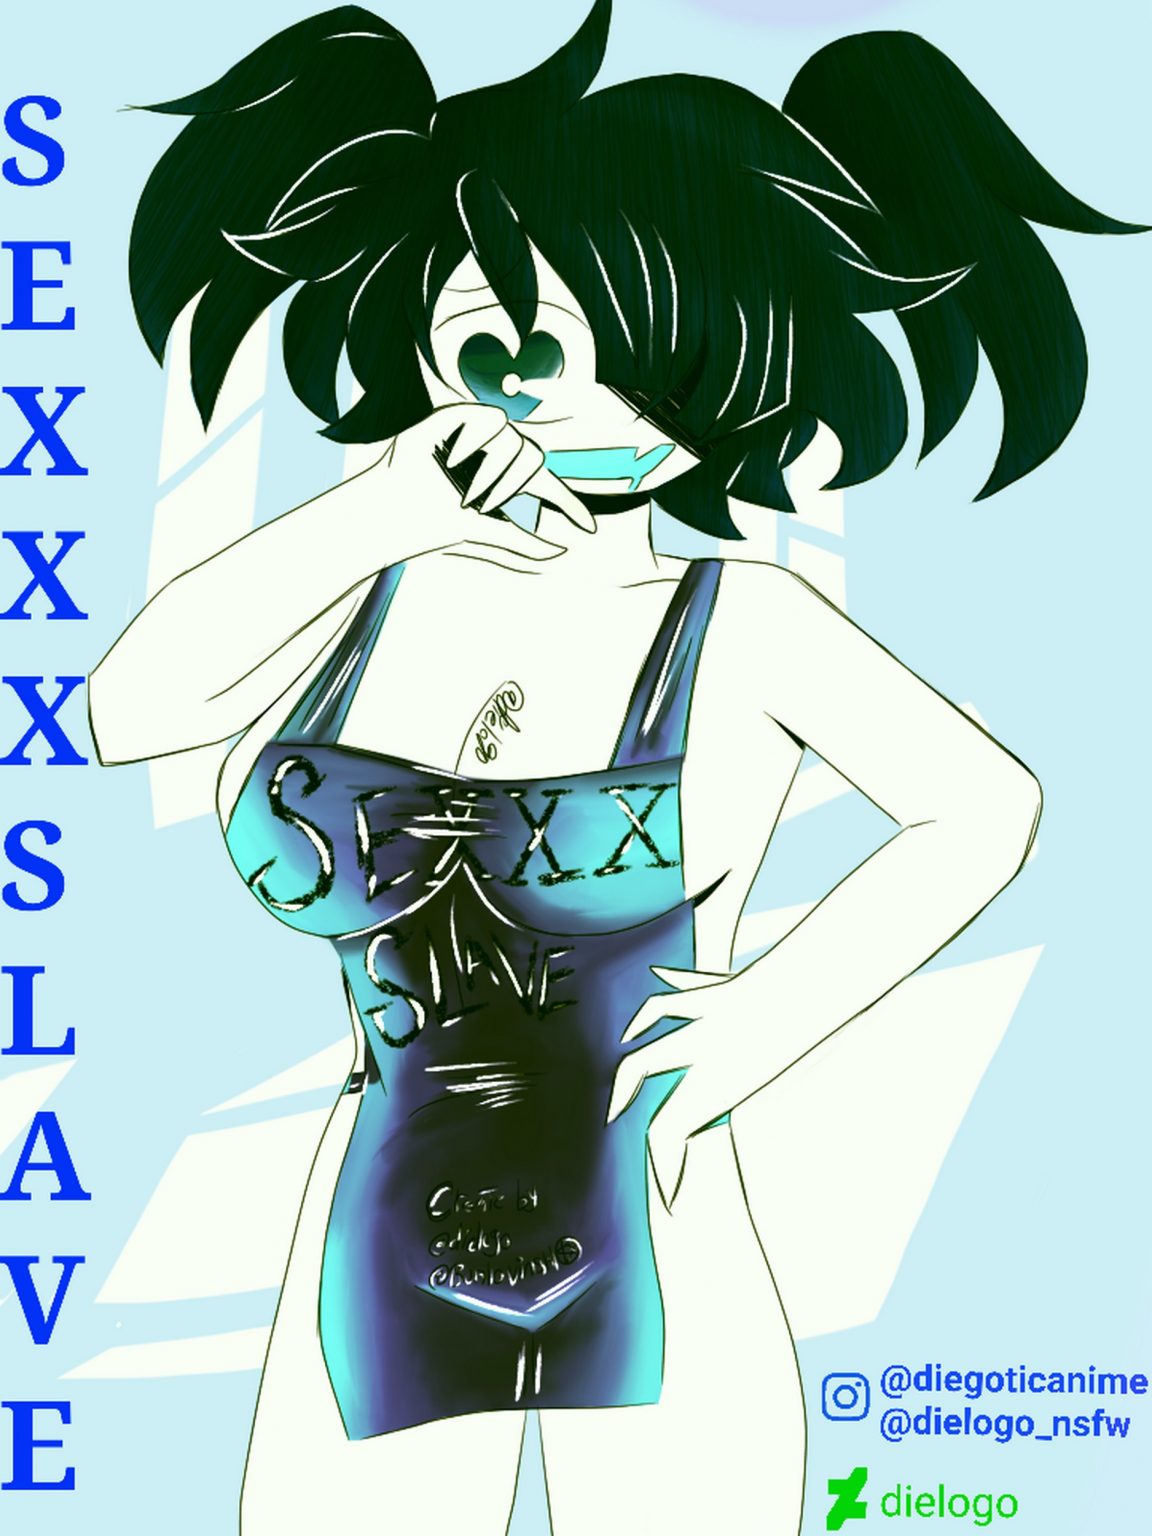 Sexxx Slave Dielogo